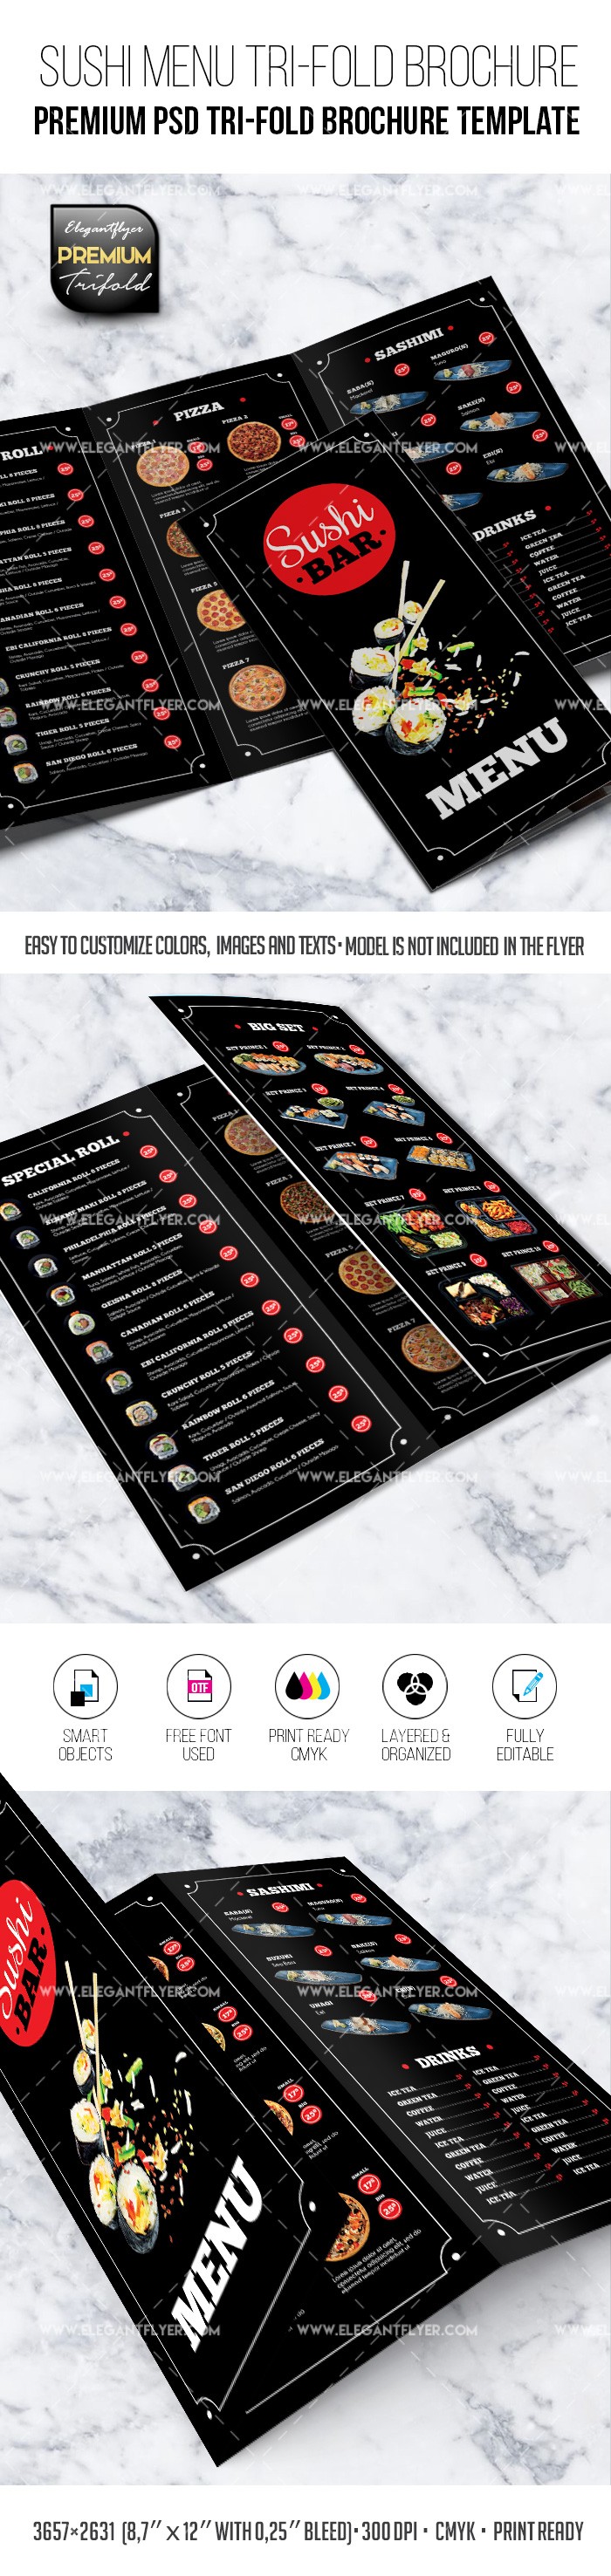 寿司餐厅菜单-高级PSD三折页传单模板 by ElegantFlyer